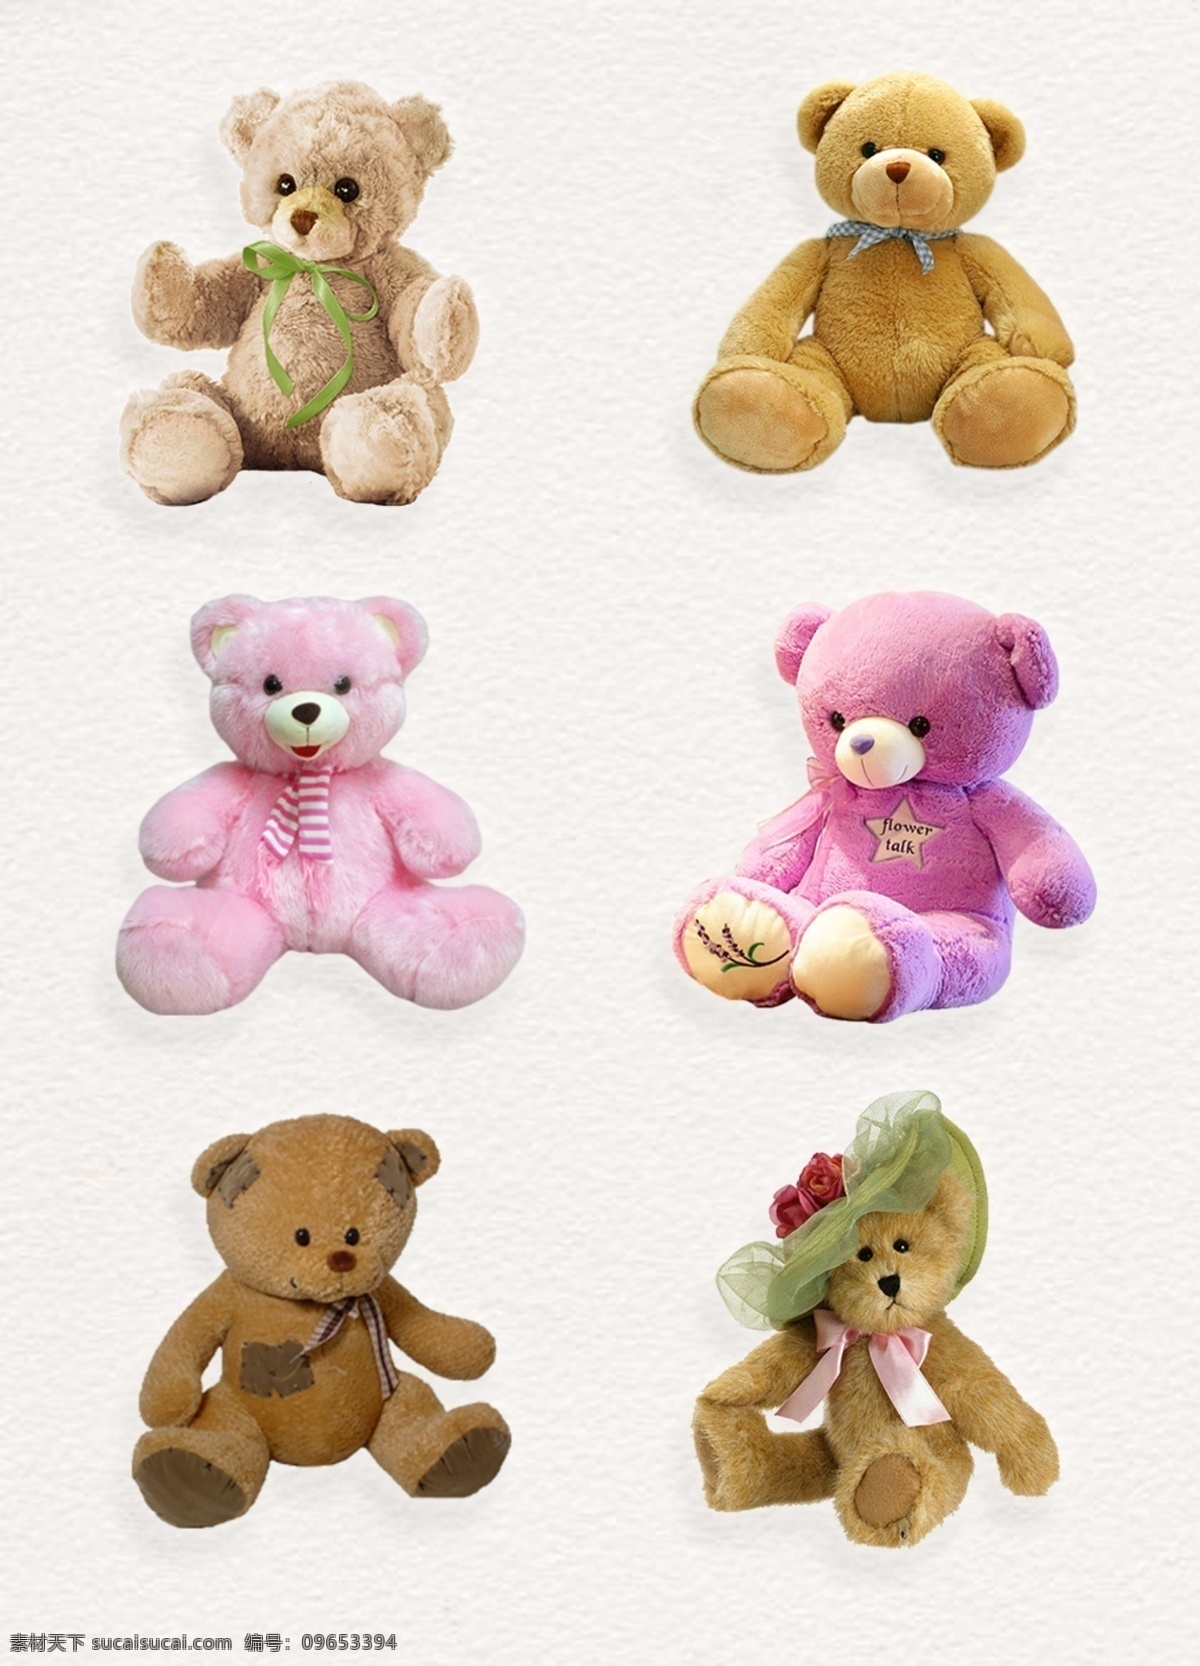 毛绒玩具 熊 产品 实物 毛绒熊 可爱娃娃 玩具熊 玩偶 产品实物 玩具小熊娃娃 娃娃熊 玩偶娃娃